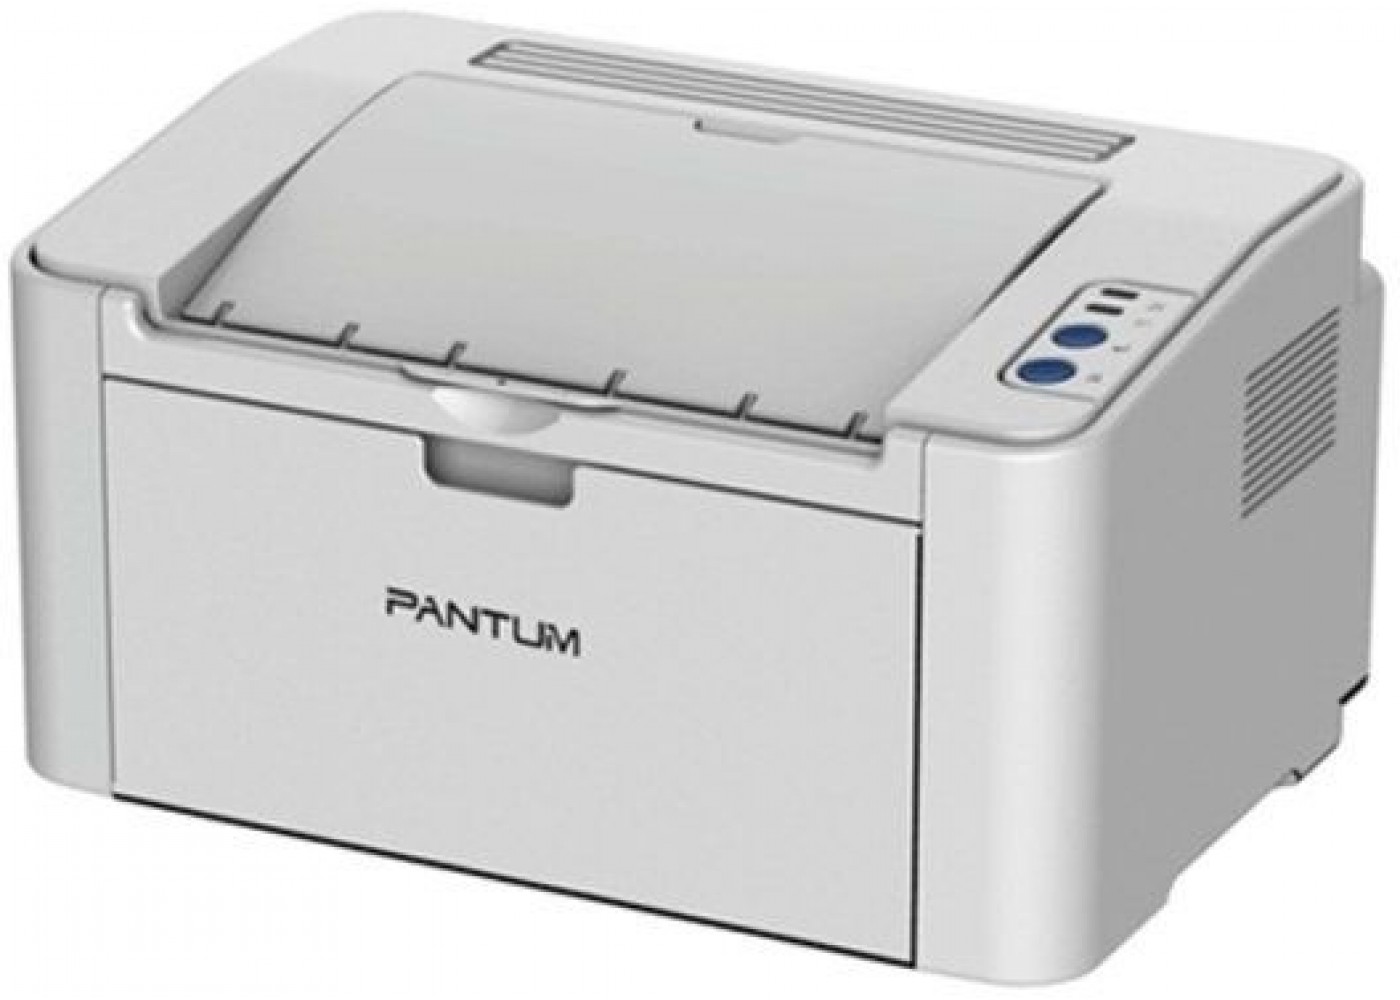 Принтер купить в ярославле. Принтер лазерный Pantum p2200. Принтер лазерный Pantum p2200 a4. Принтер лазерный Pantum p2200 серый. Pantum принтер p2200 принтер.